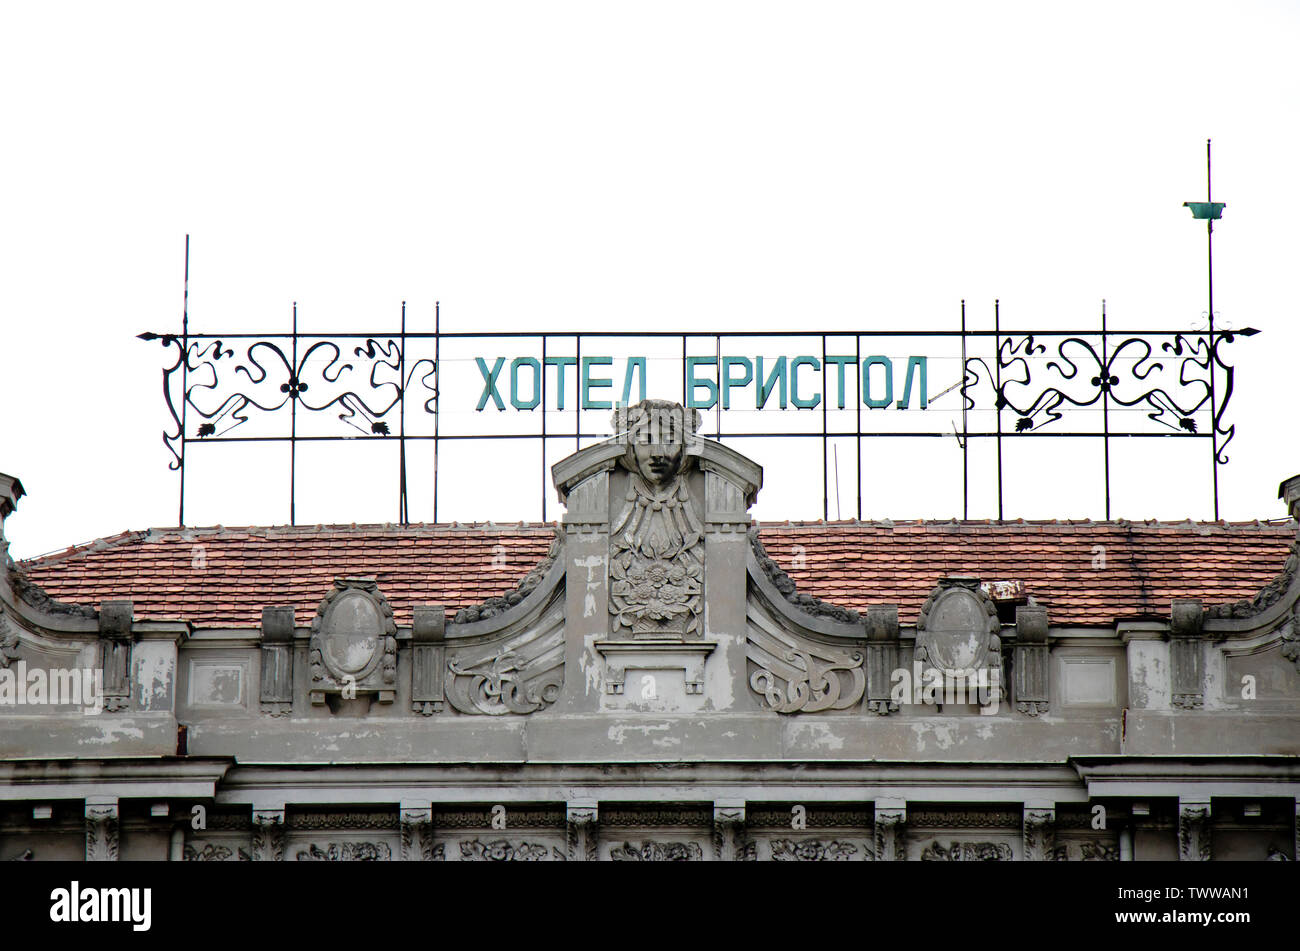 Belgrade, Serbie - 7 mai 2019 : Ancien hôtel Bristol sur le toit, les lettres cyrilliques et ornements Art déco nouveau Banque D'Images